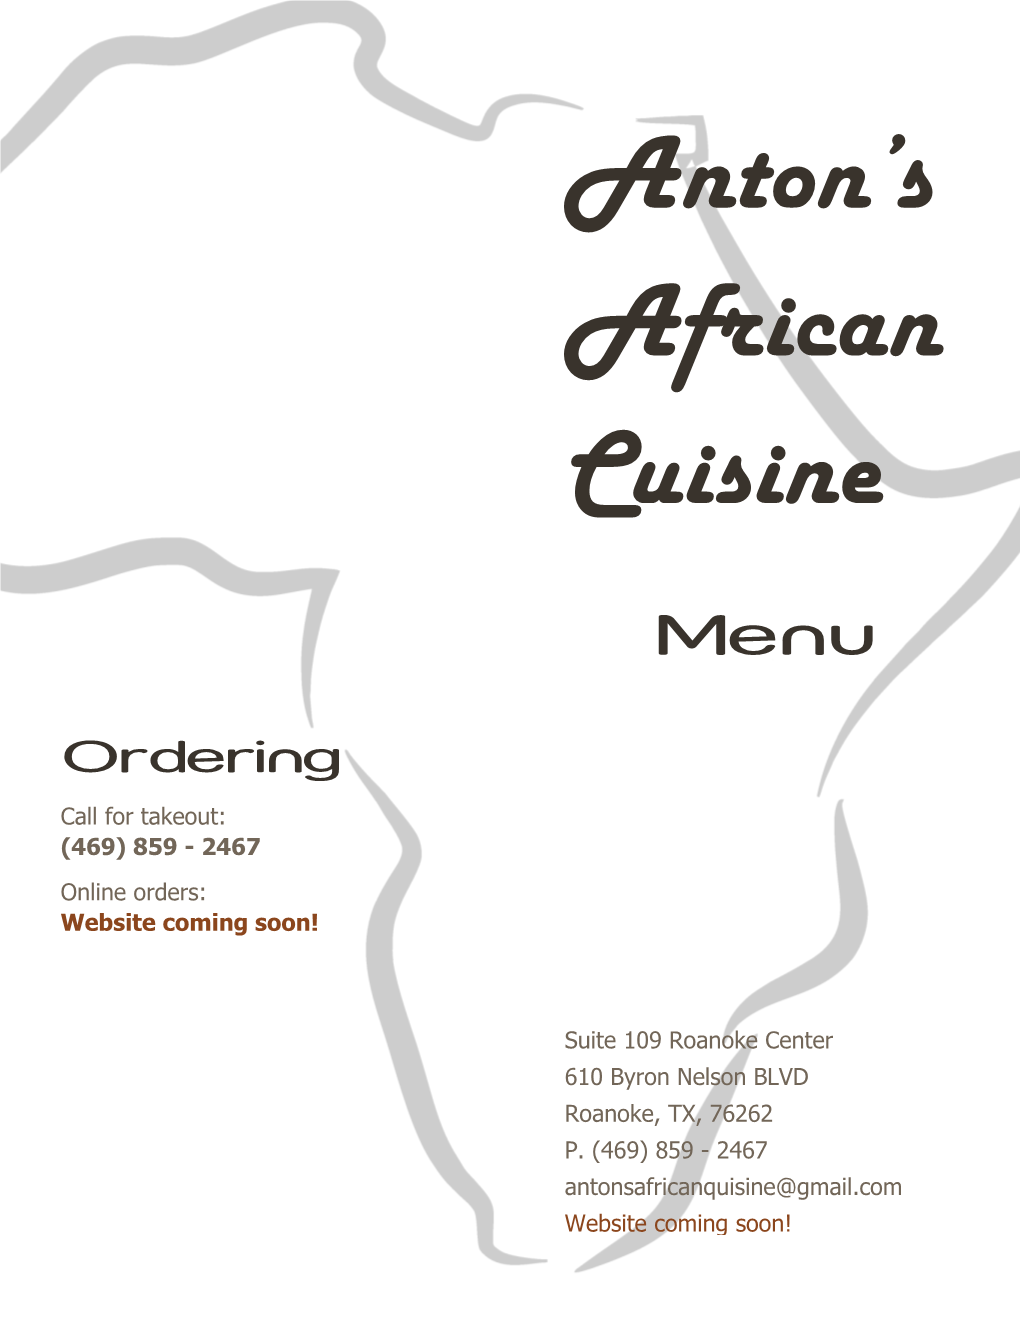 Anton's African Cuisine